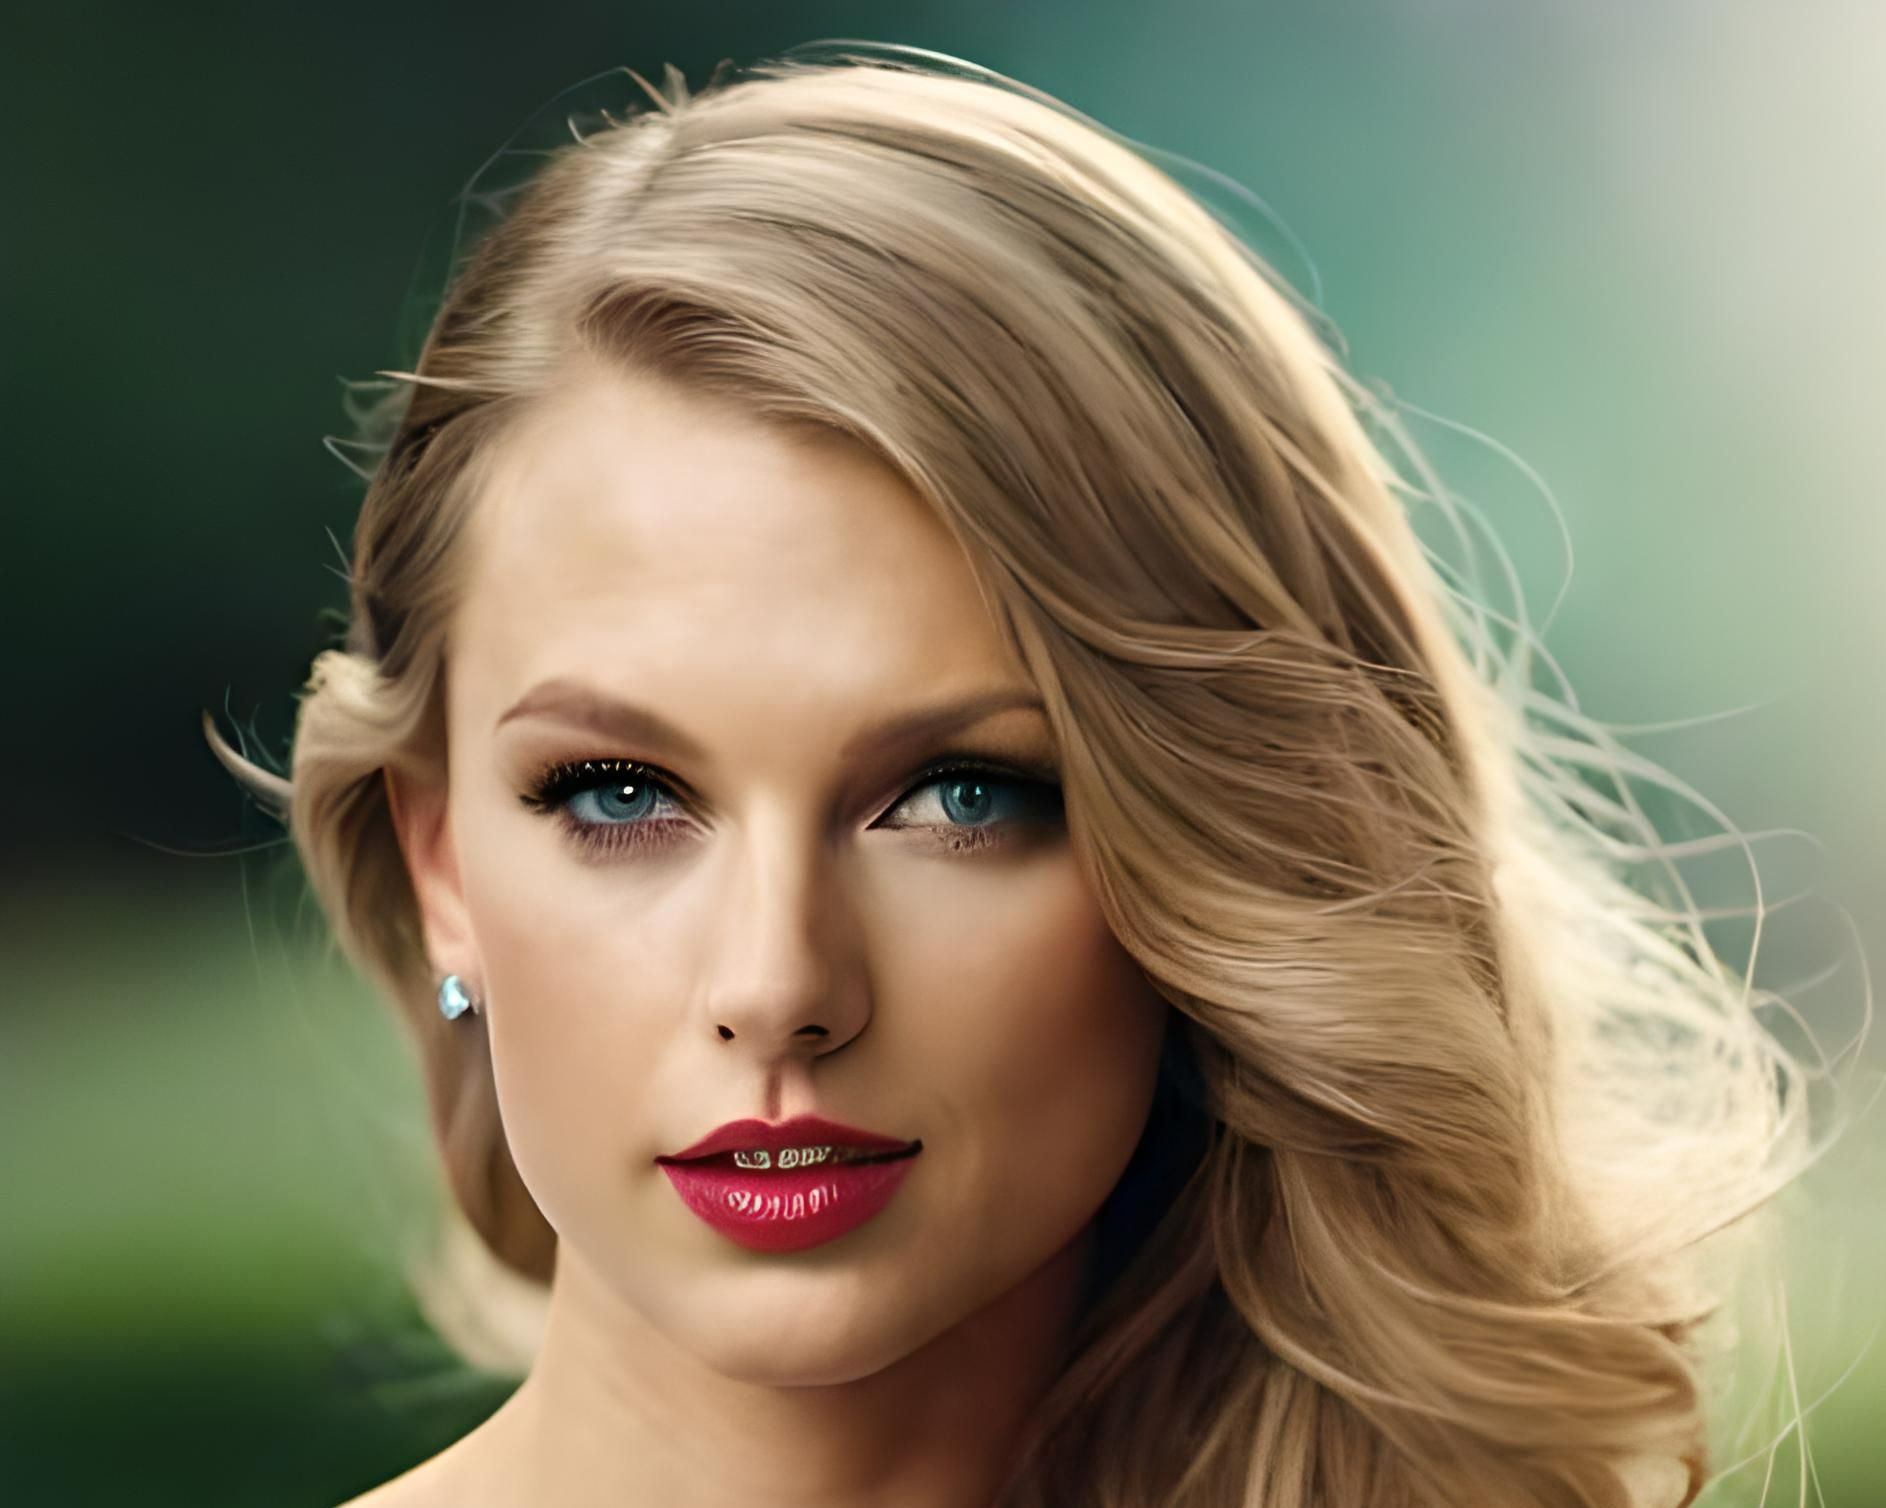 Taylor's Mosaic: Faces of Devotion